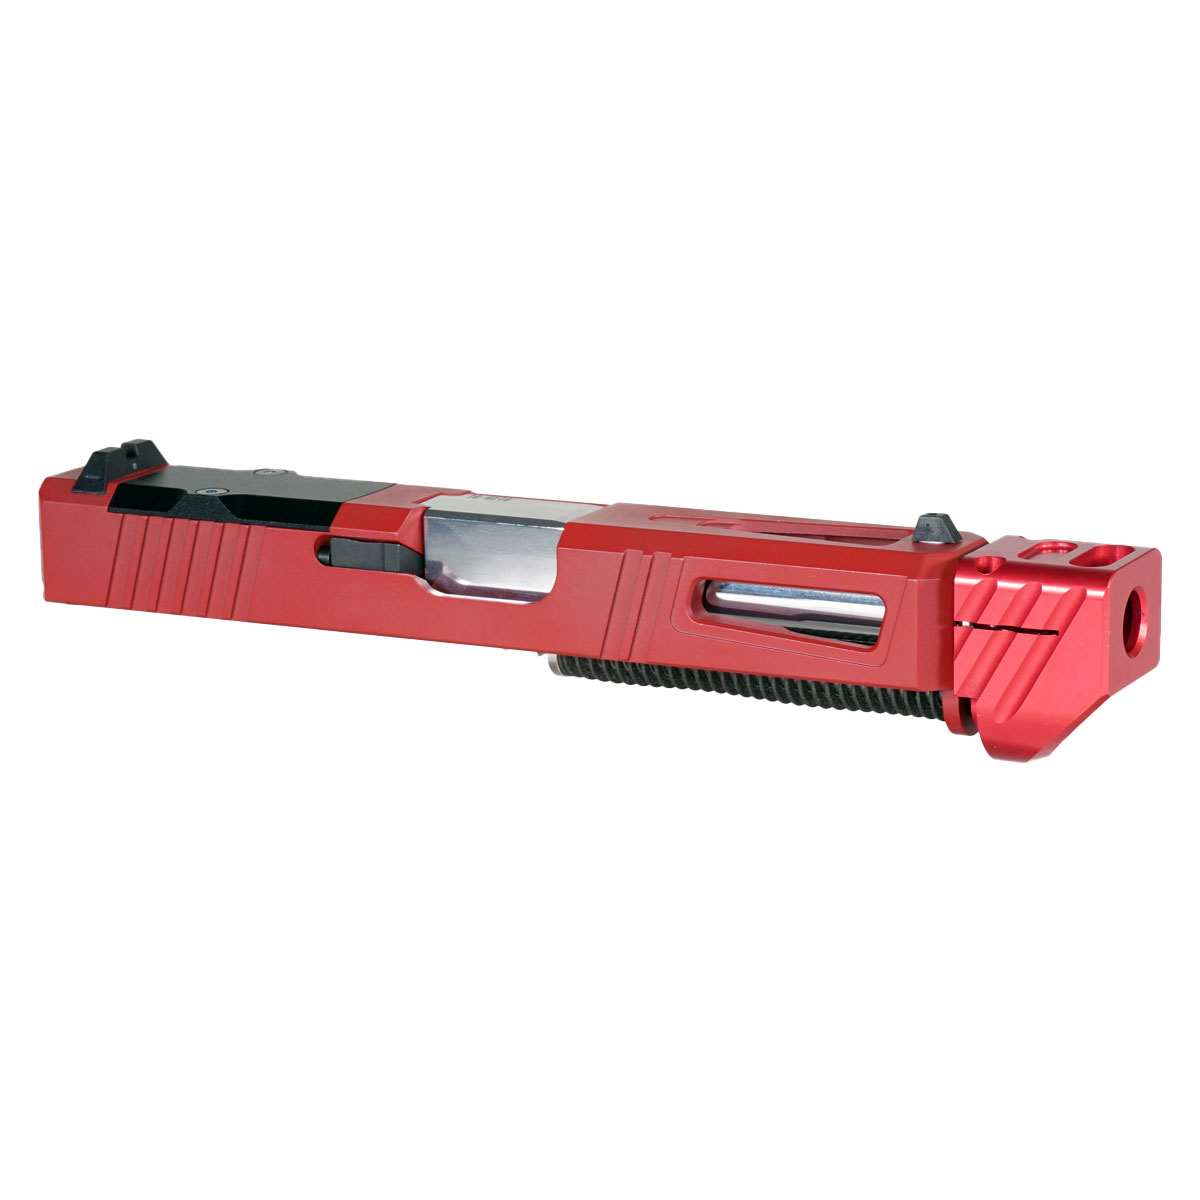 DTT 'Pisa V3 w/ Red Compensator' 9mm Complete Slide Kit - Glock 19 Gen 1-3 Compatible